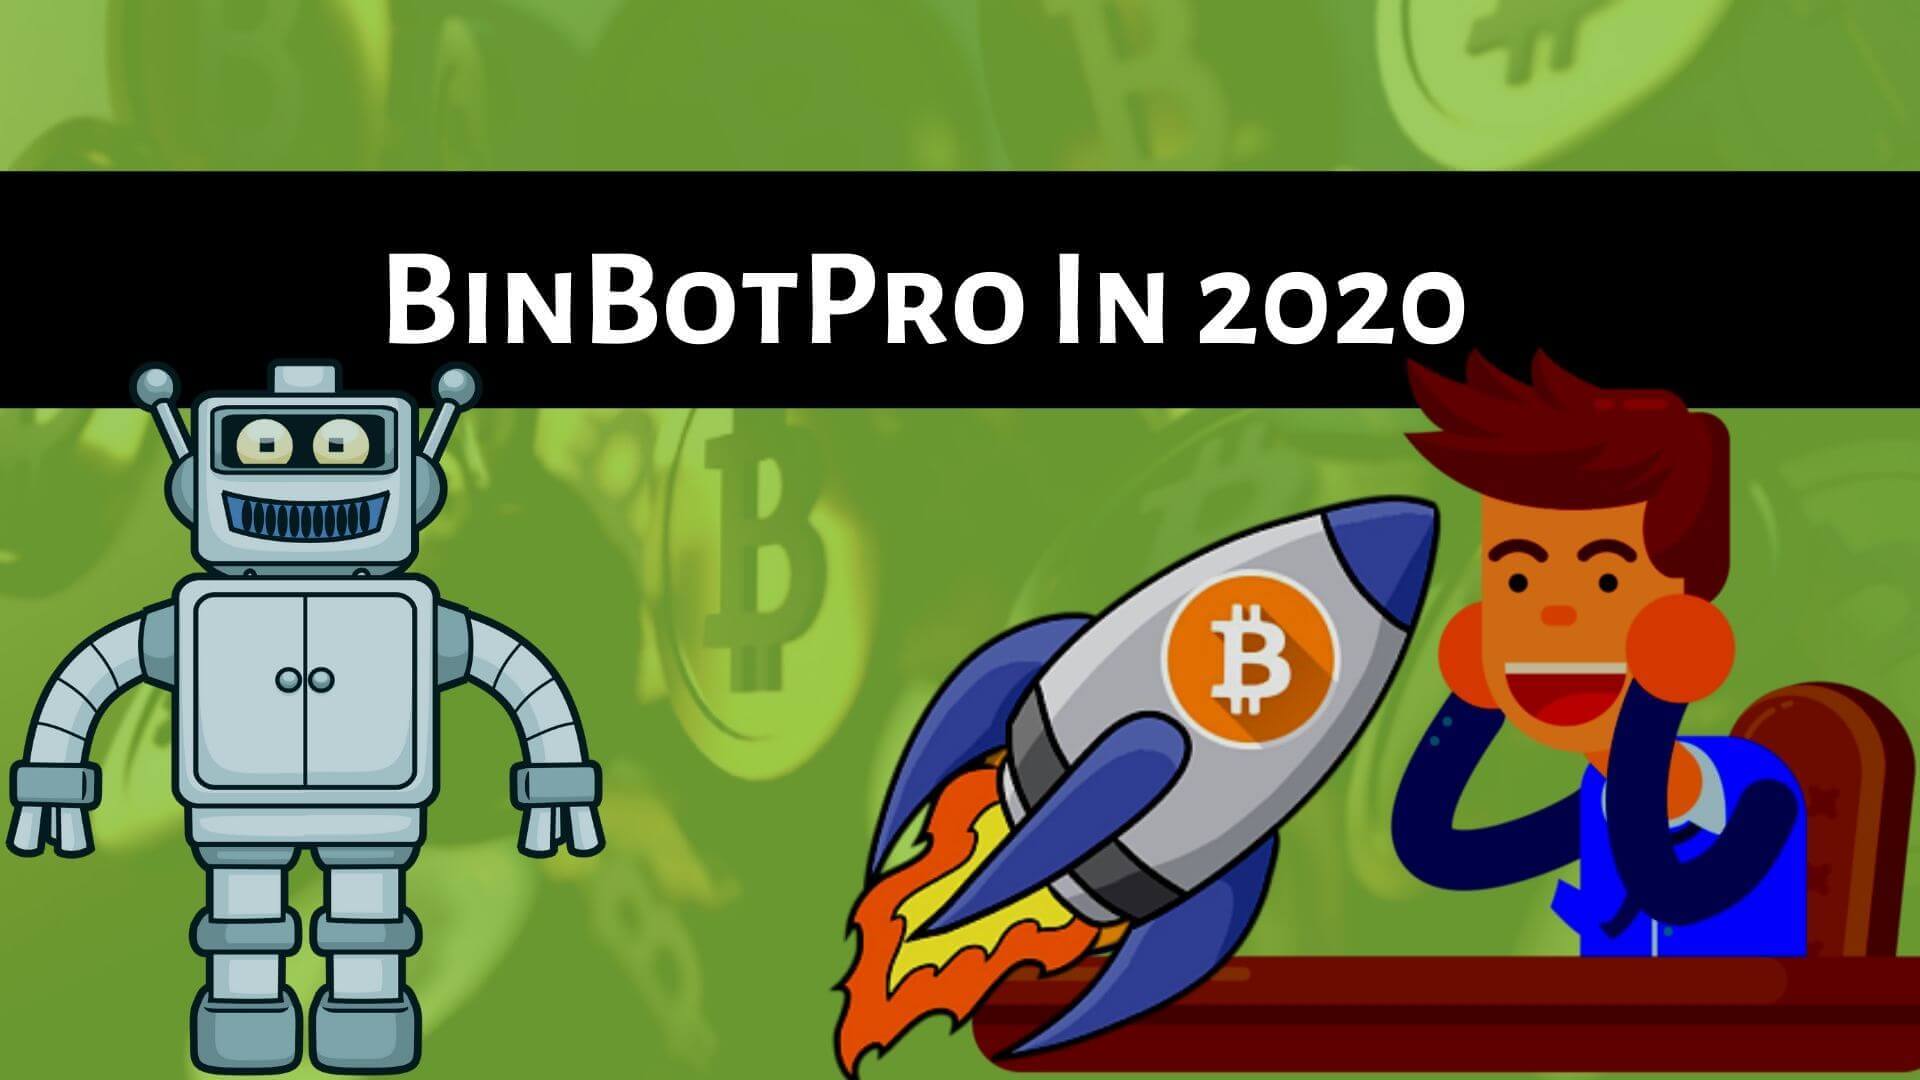 BinBotPro In 2020-Binoption